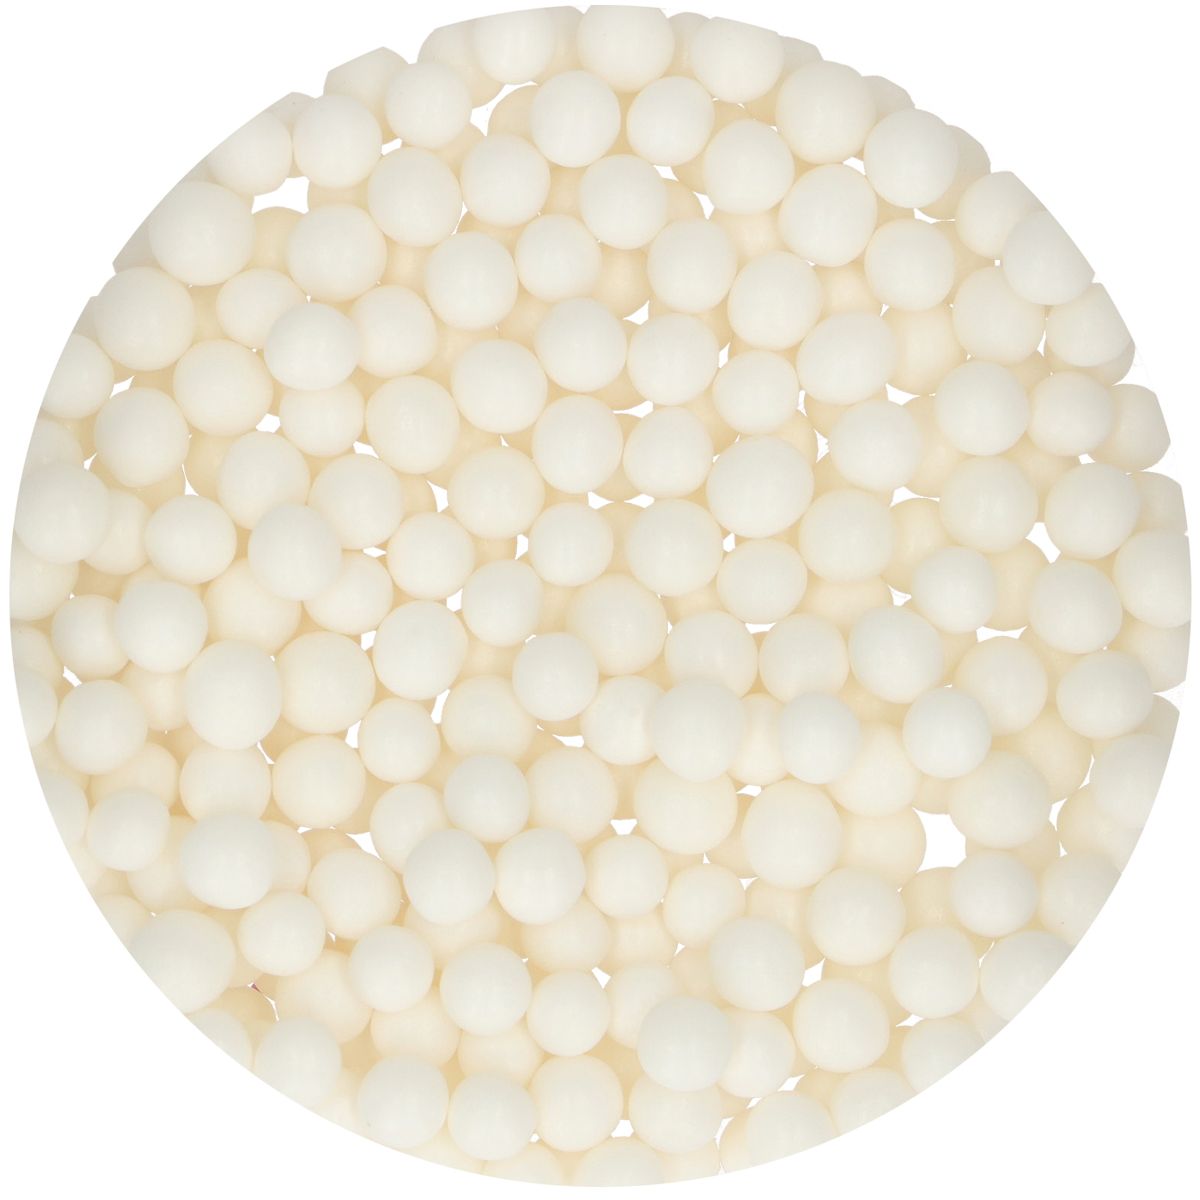 FunCakes Sugar Pearls Large White 70 G